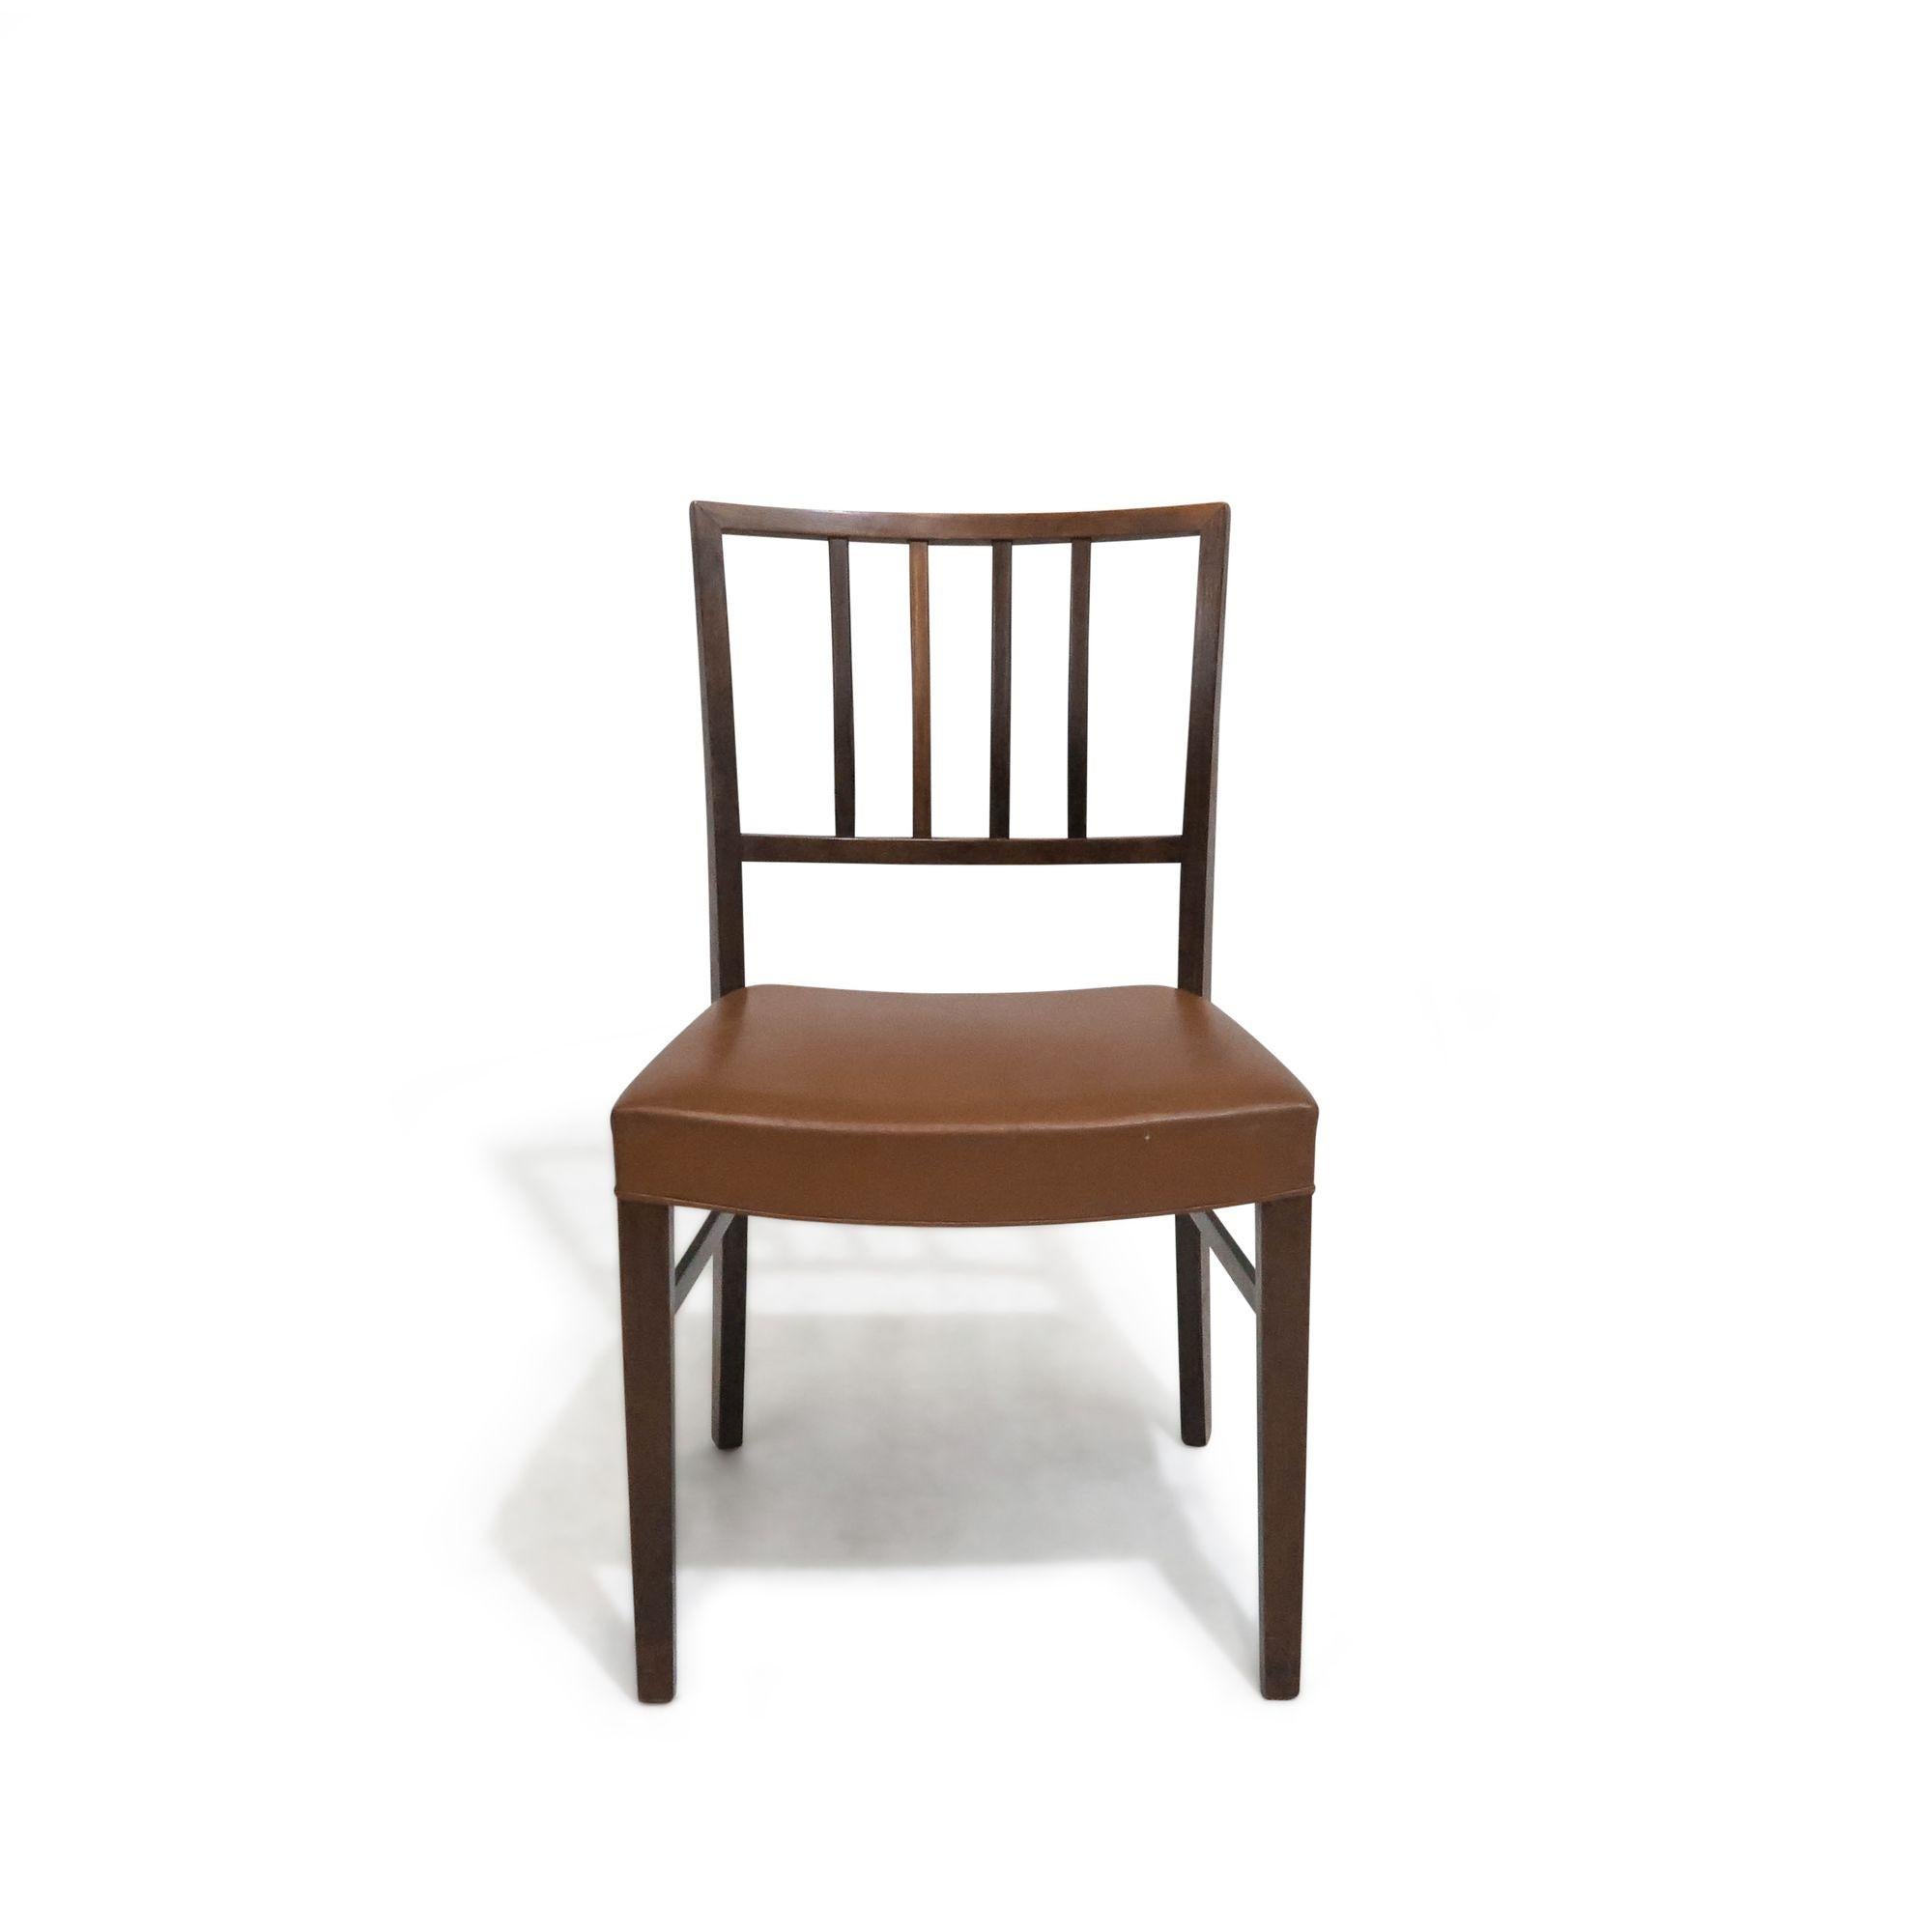 Ensemble de 6 chaises de salle à manger à la manière de Jacob Kjaer, fabriquées en bois de rose avec des dossiers à lattes minimales, recouvertes de cuir de selle d'origine.
Les chaises sont en bon état d'origine.
 
Mesures :
18.75'' x D 20.25''